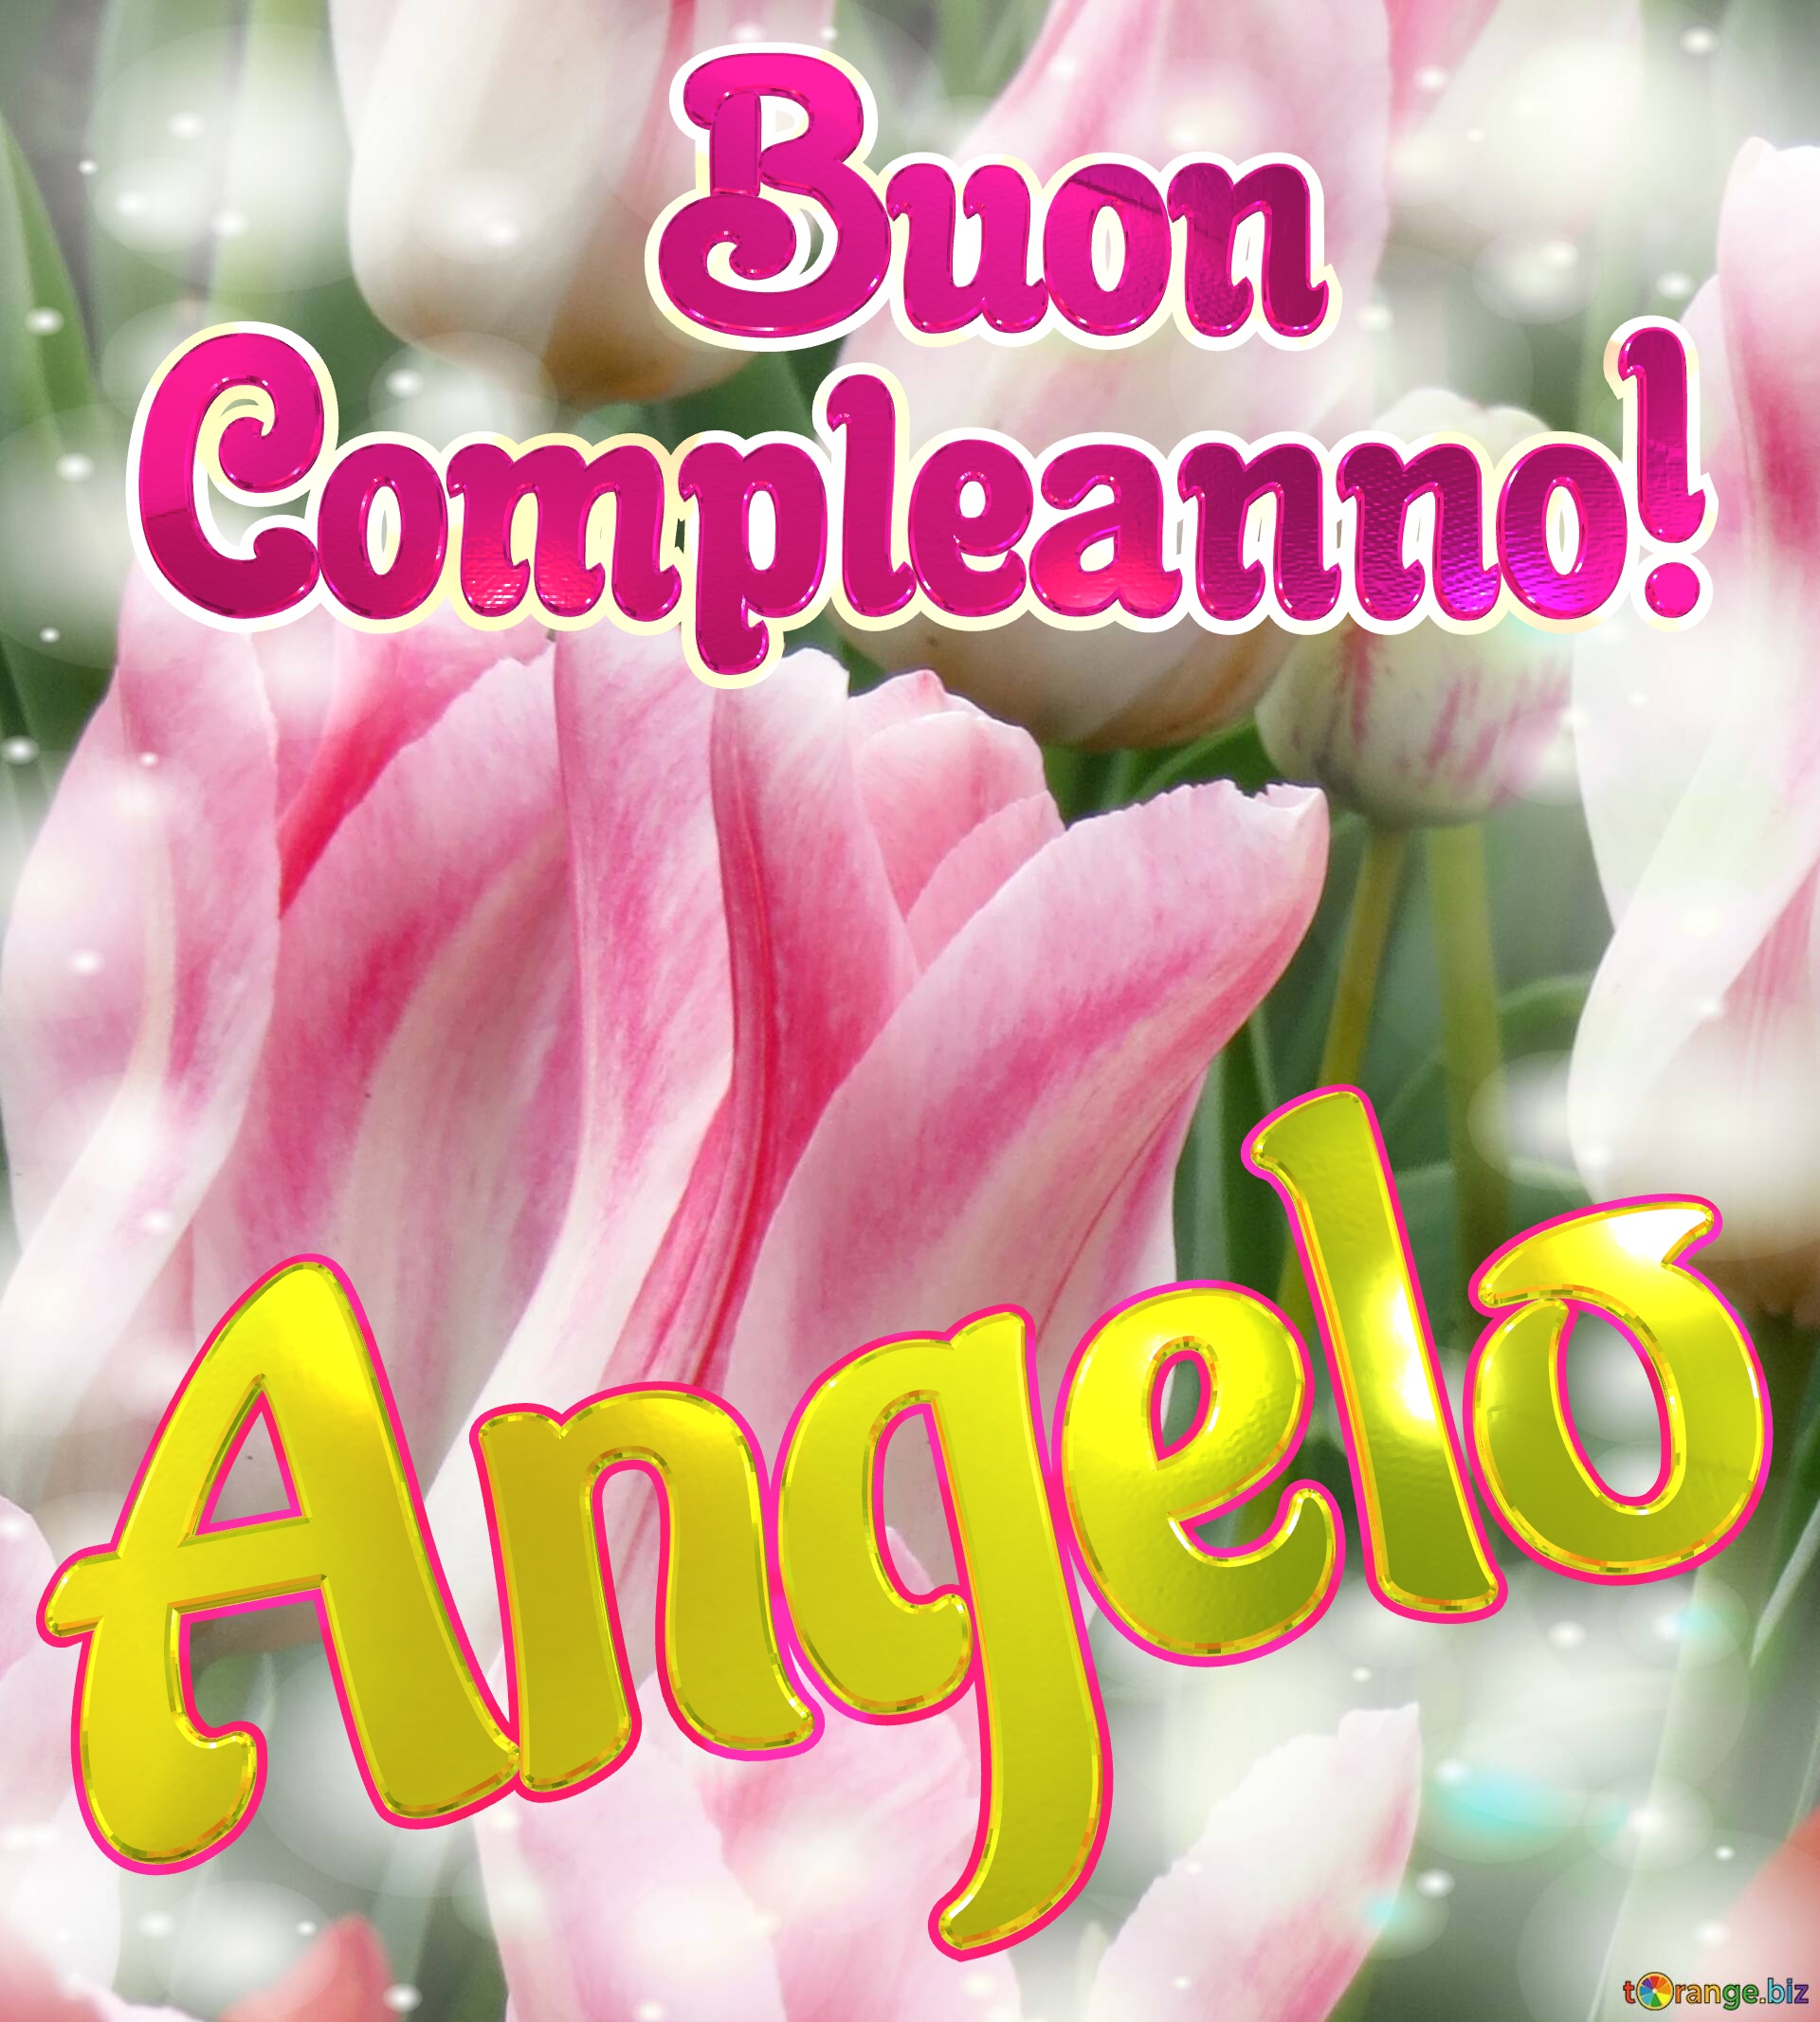       Buon  Compleanno! Angelo  La bellezza dei tulipani è un richiamo alla semplicità della vita, goditela al massimo. №0